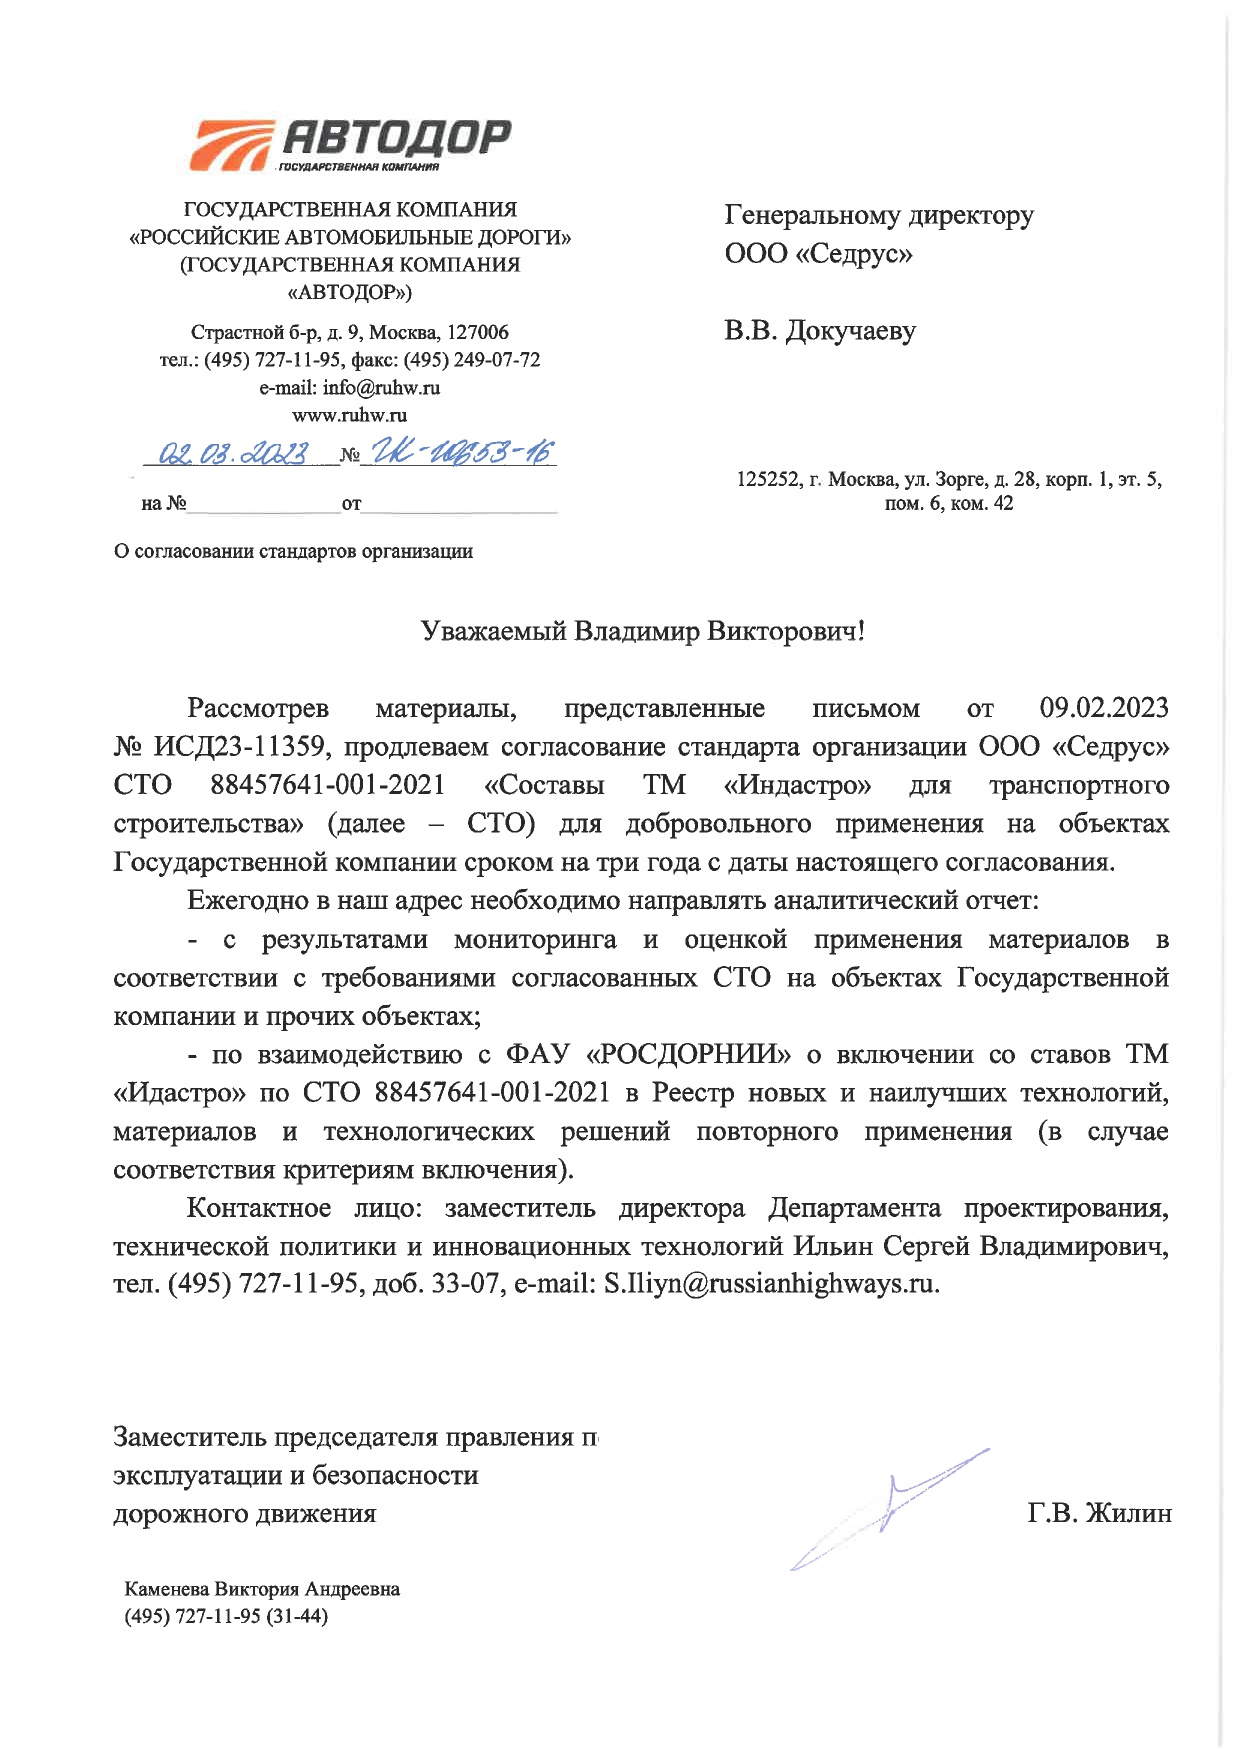 Согласование ГК "Автодор" СТО 88457641-001-2021